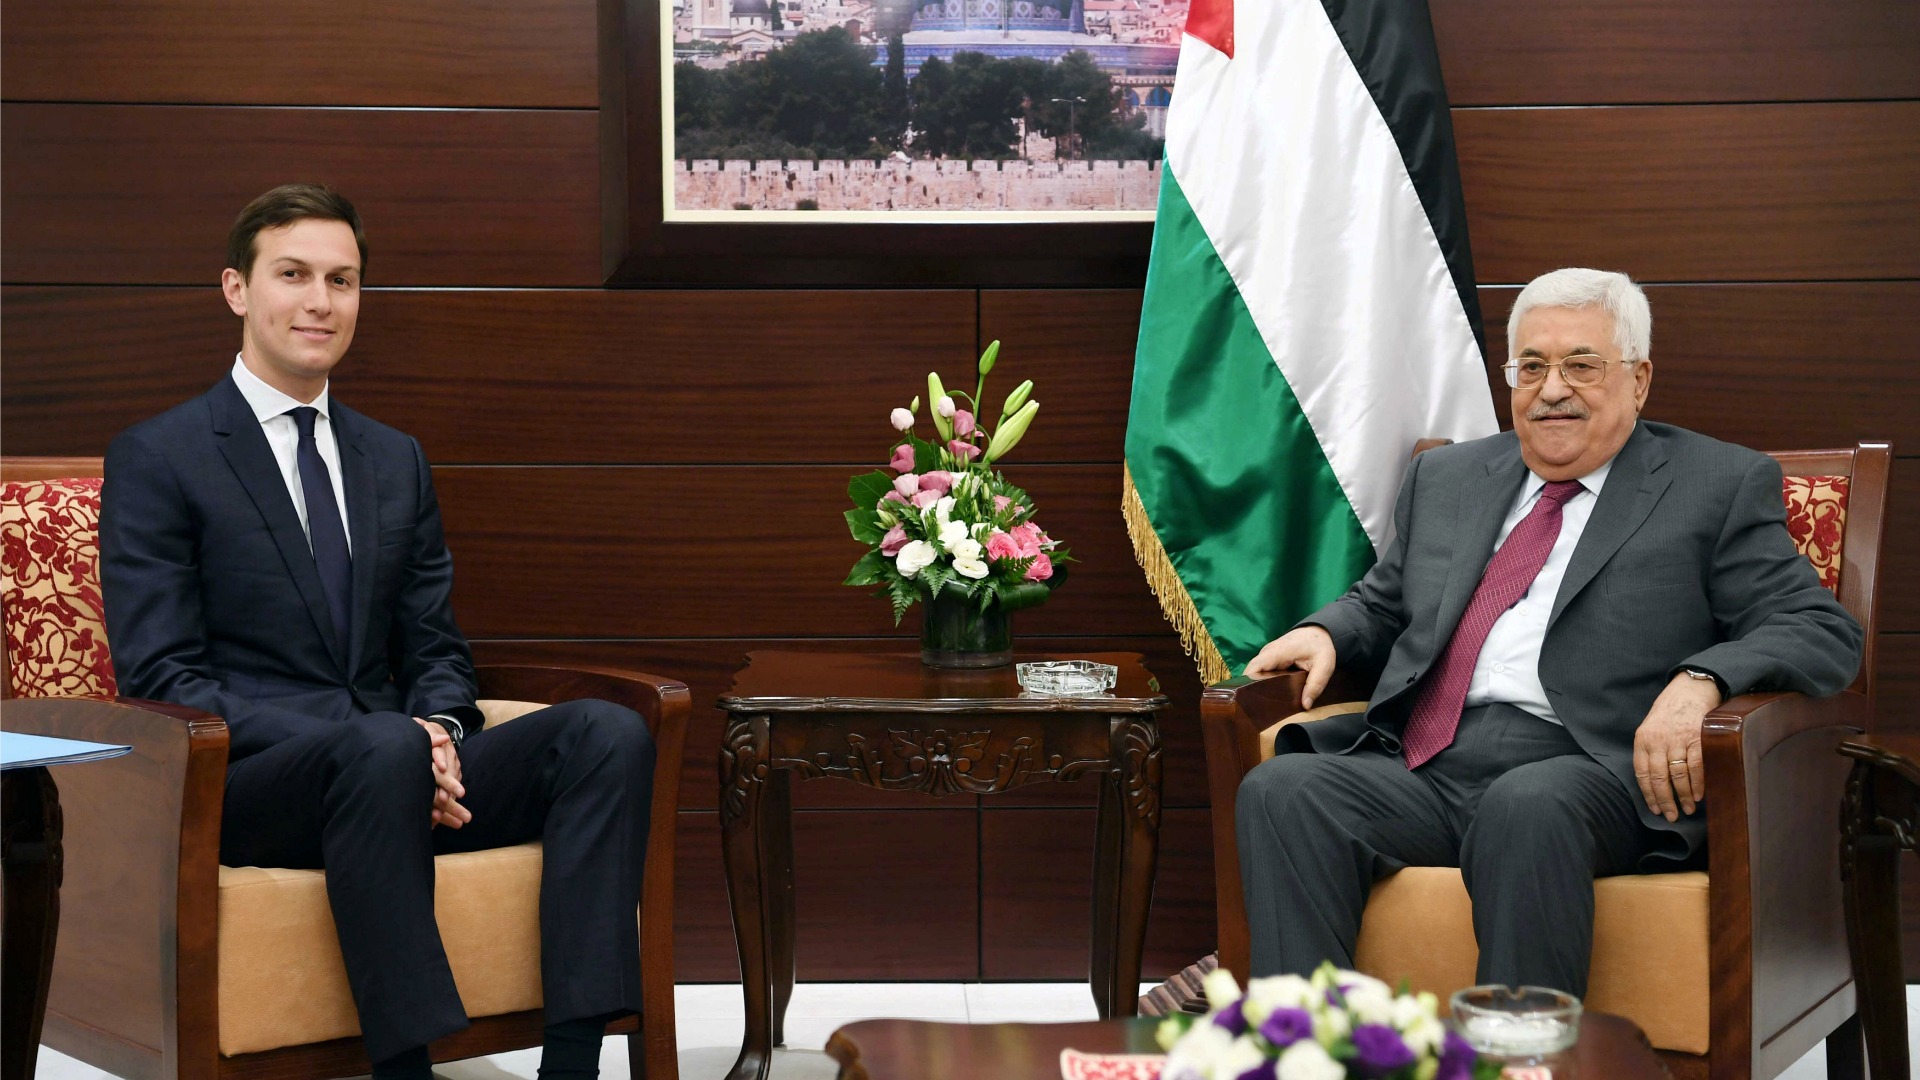 El yerno y asesor de Trump trata de reactivar en Israel el proceso de paz de Oriente Próximo